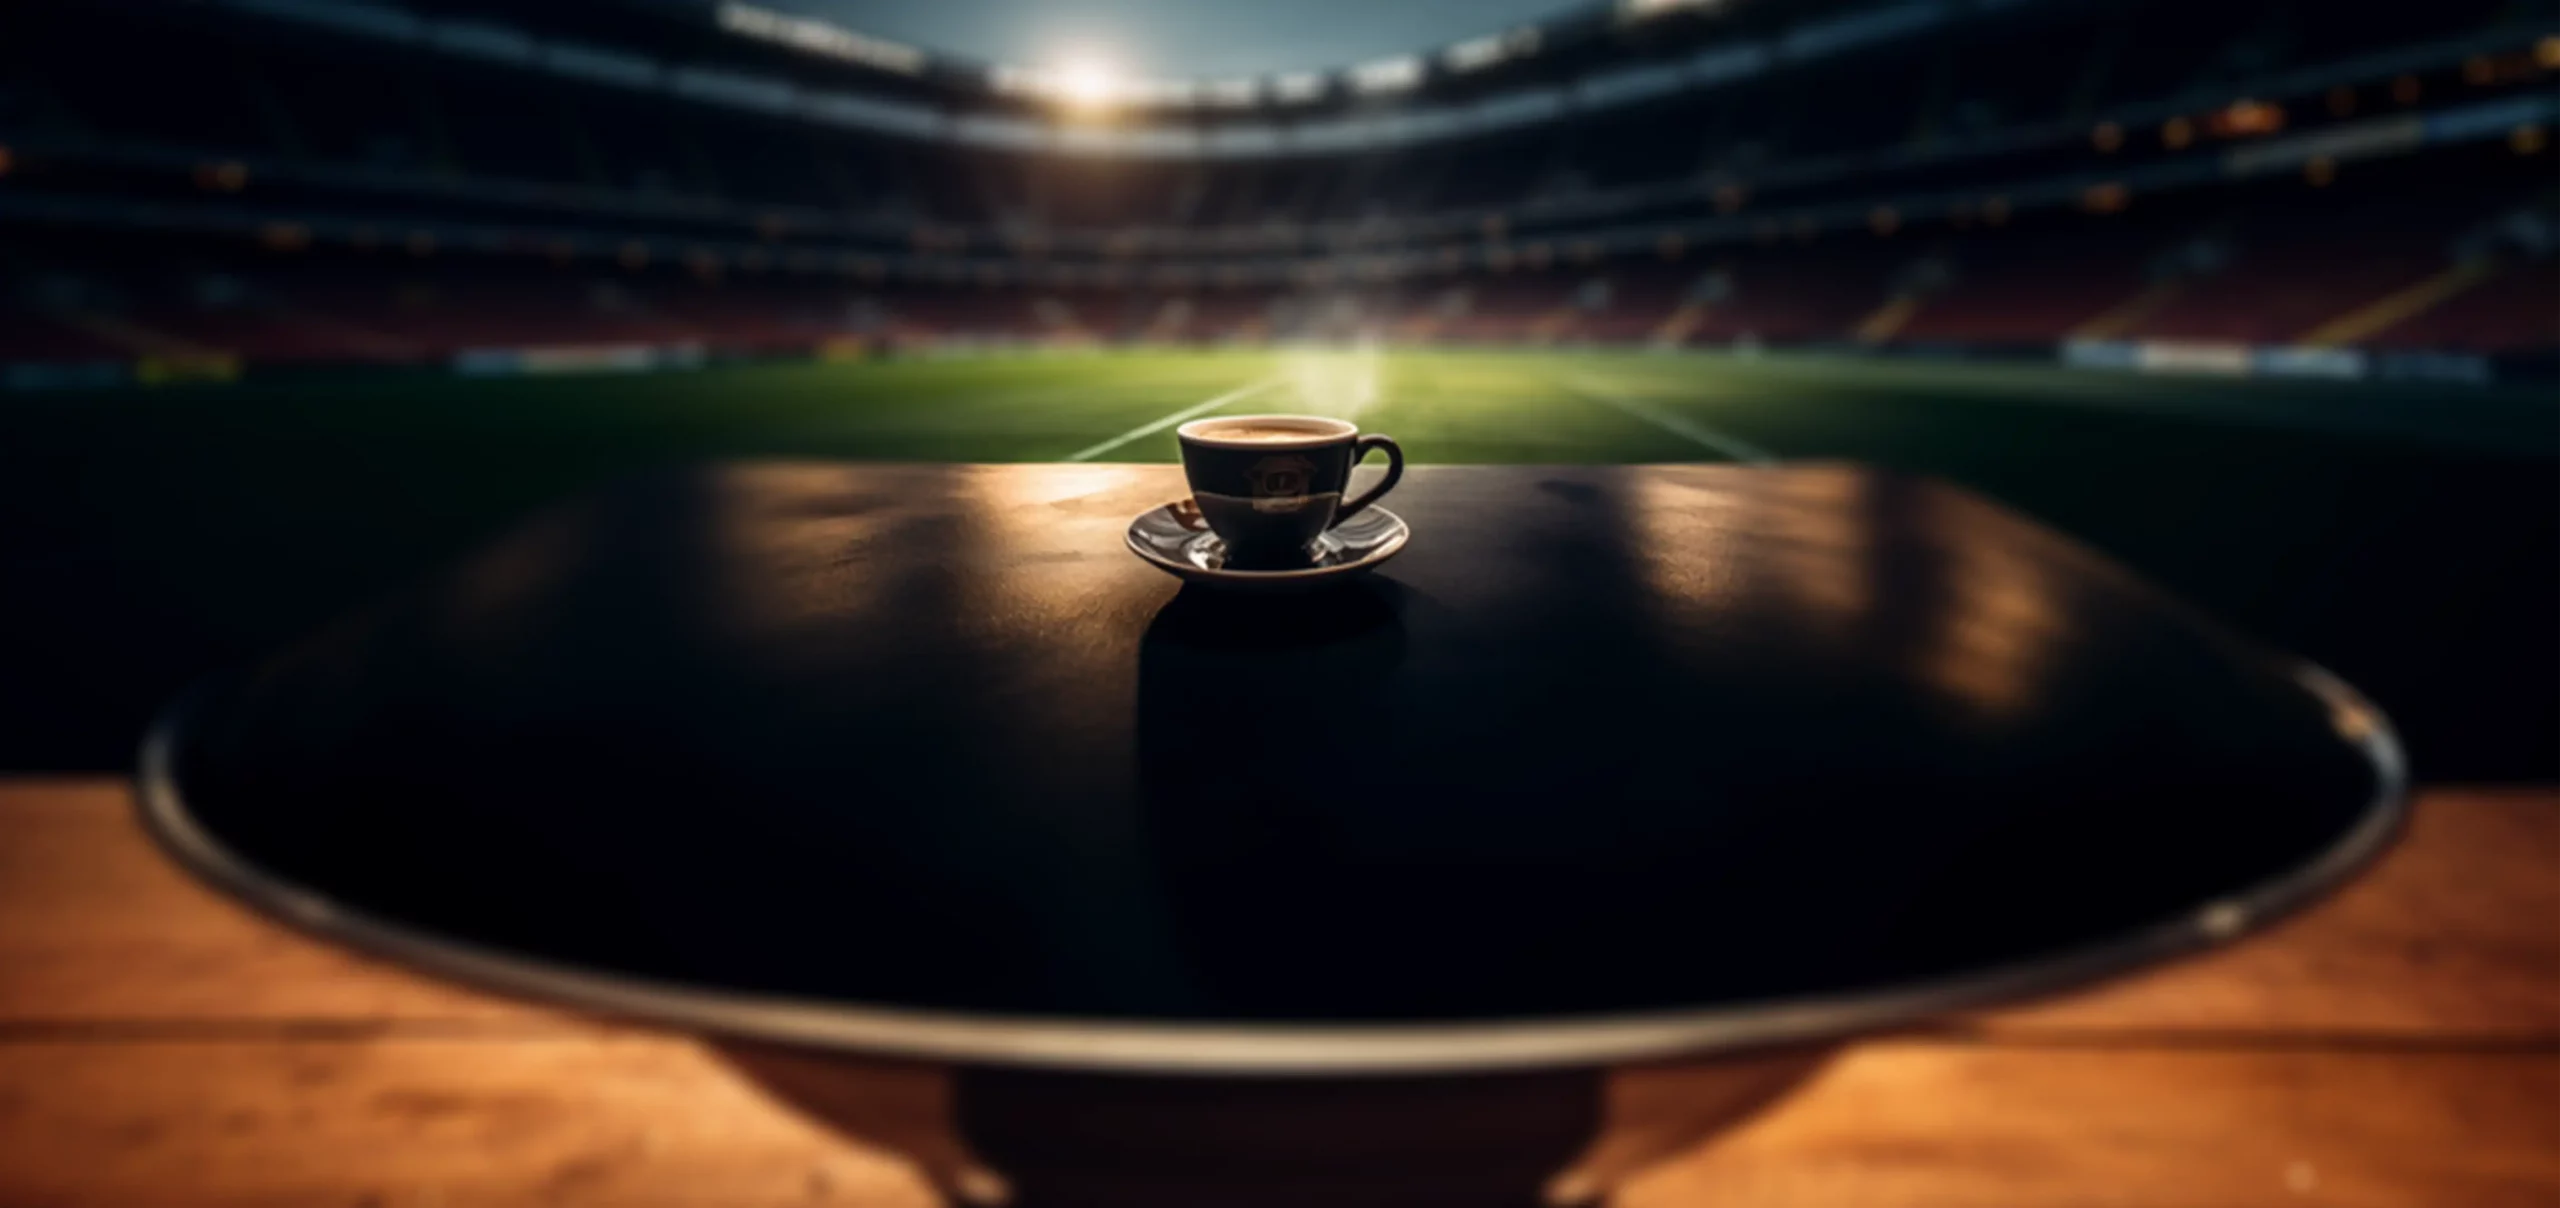 Symbolbild für Malzkaffee gesund, Espressotasse steht auf rundem Tisch am Rand eines Fußballstadions.